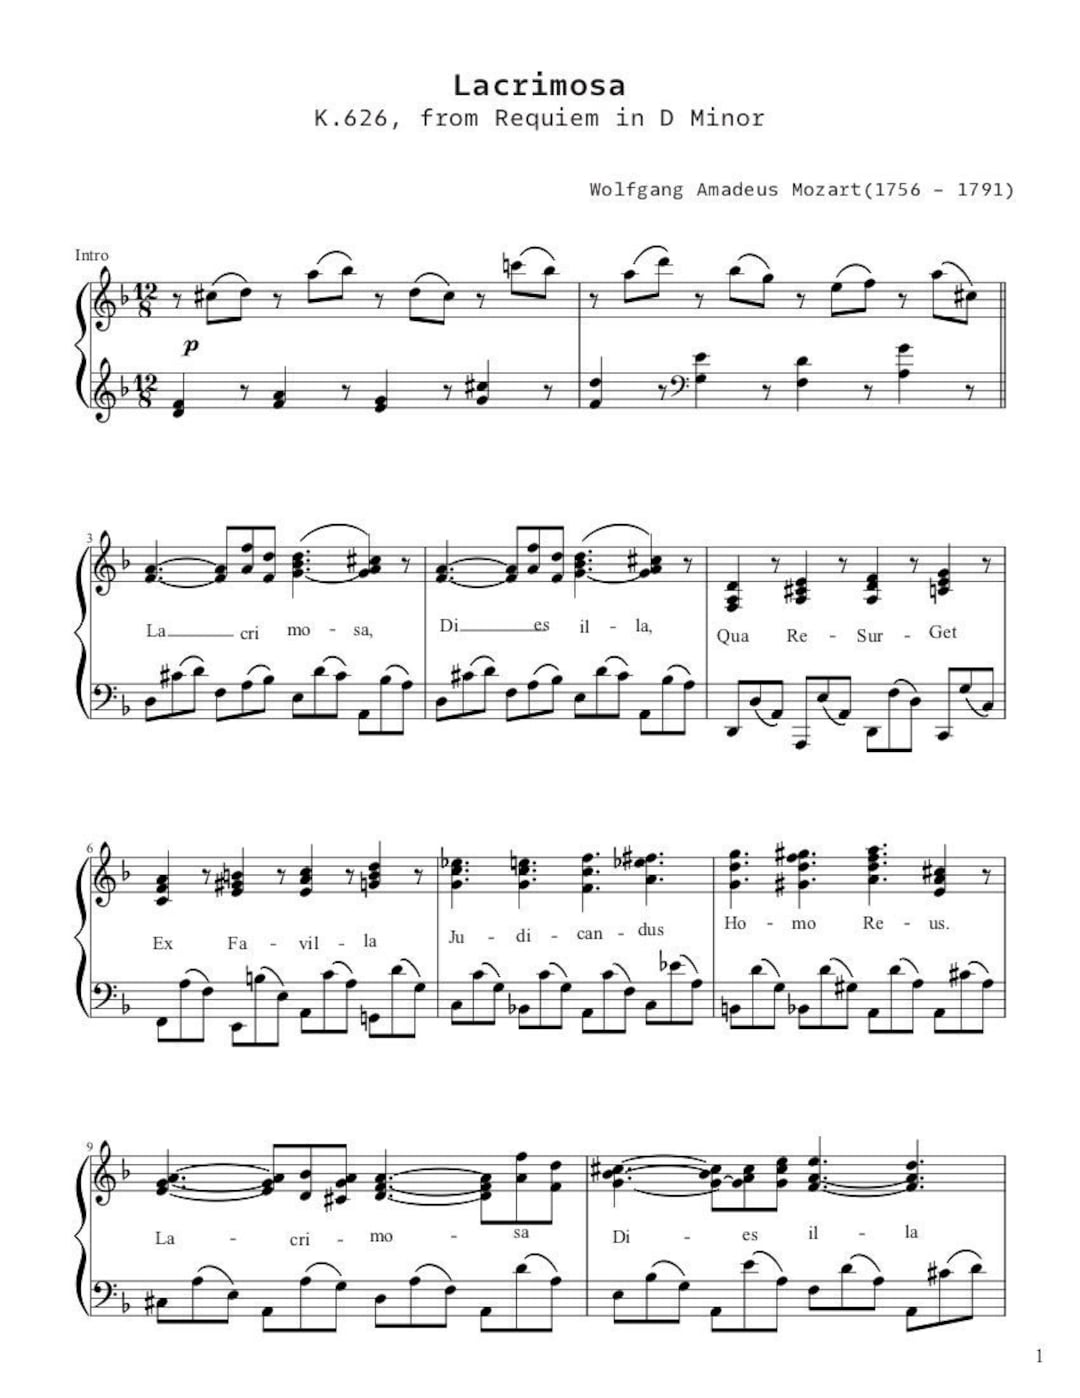 Requiem Mozart (Tradução), PDF